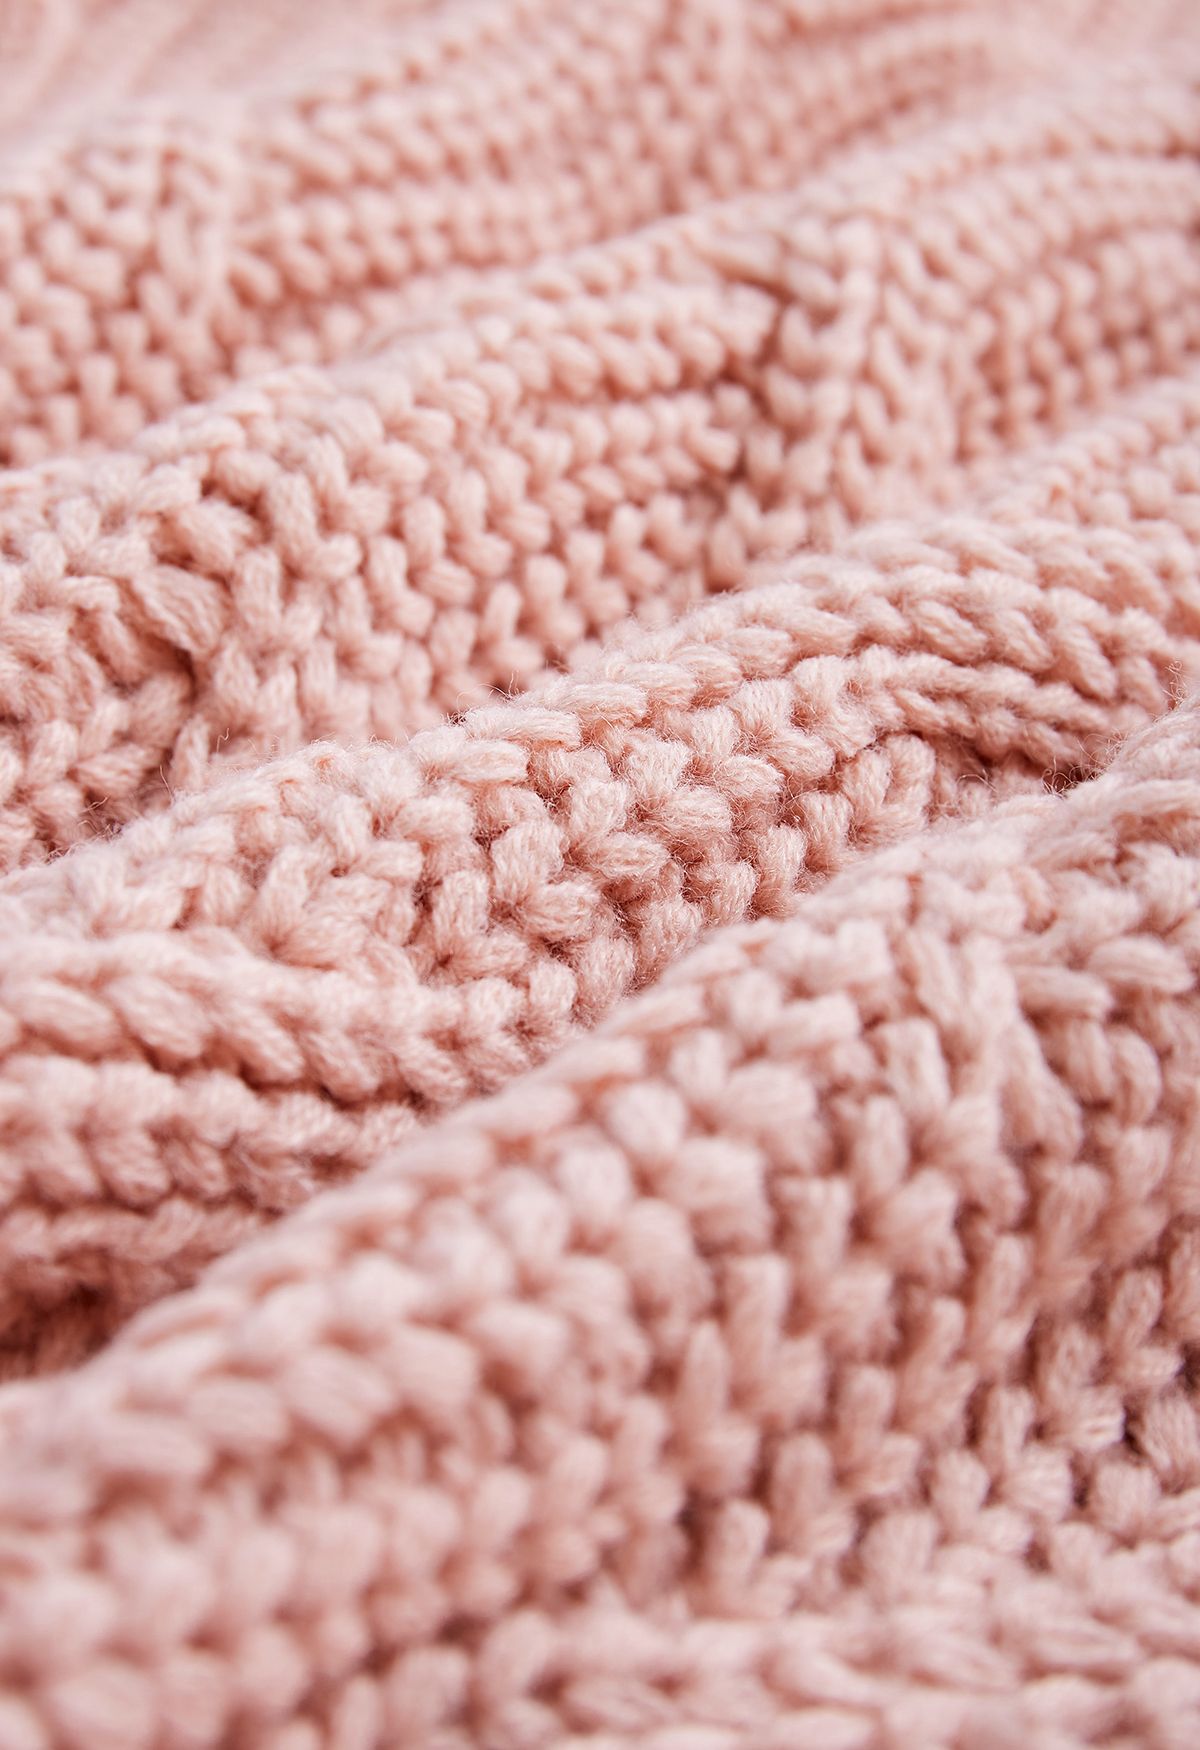 Suéter de punto grueso trenzado Hi-Lo de cuello alto en rosa